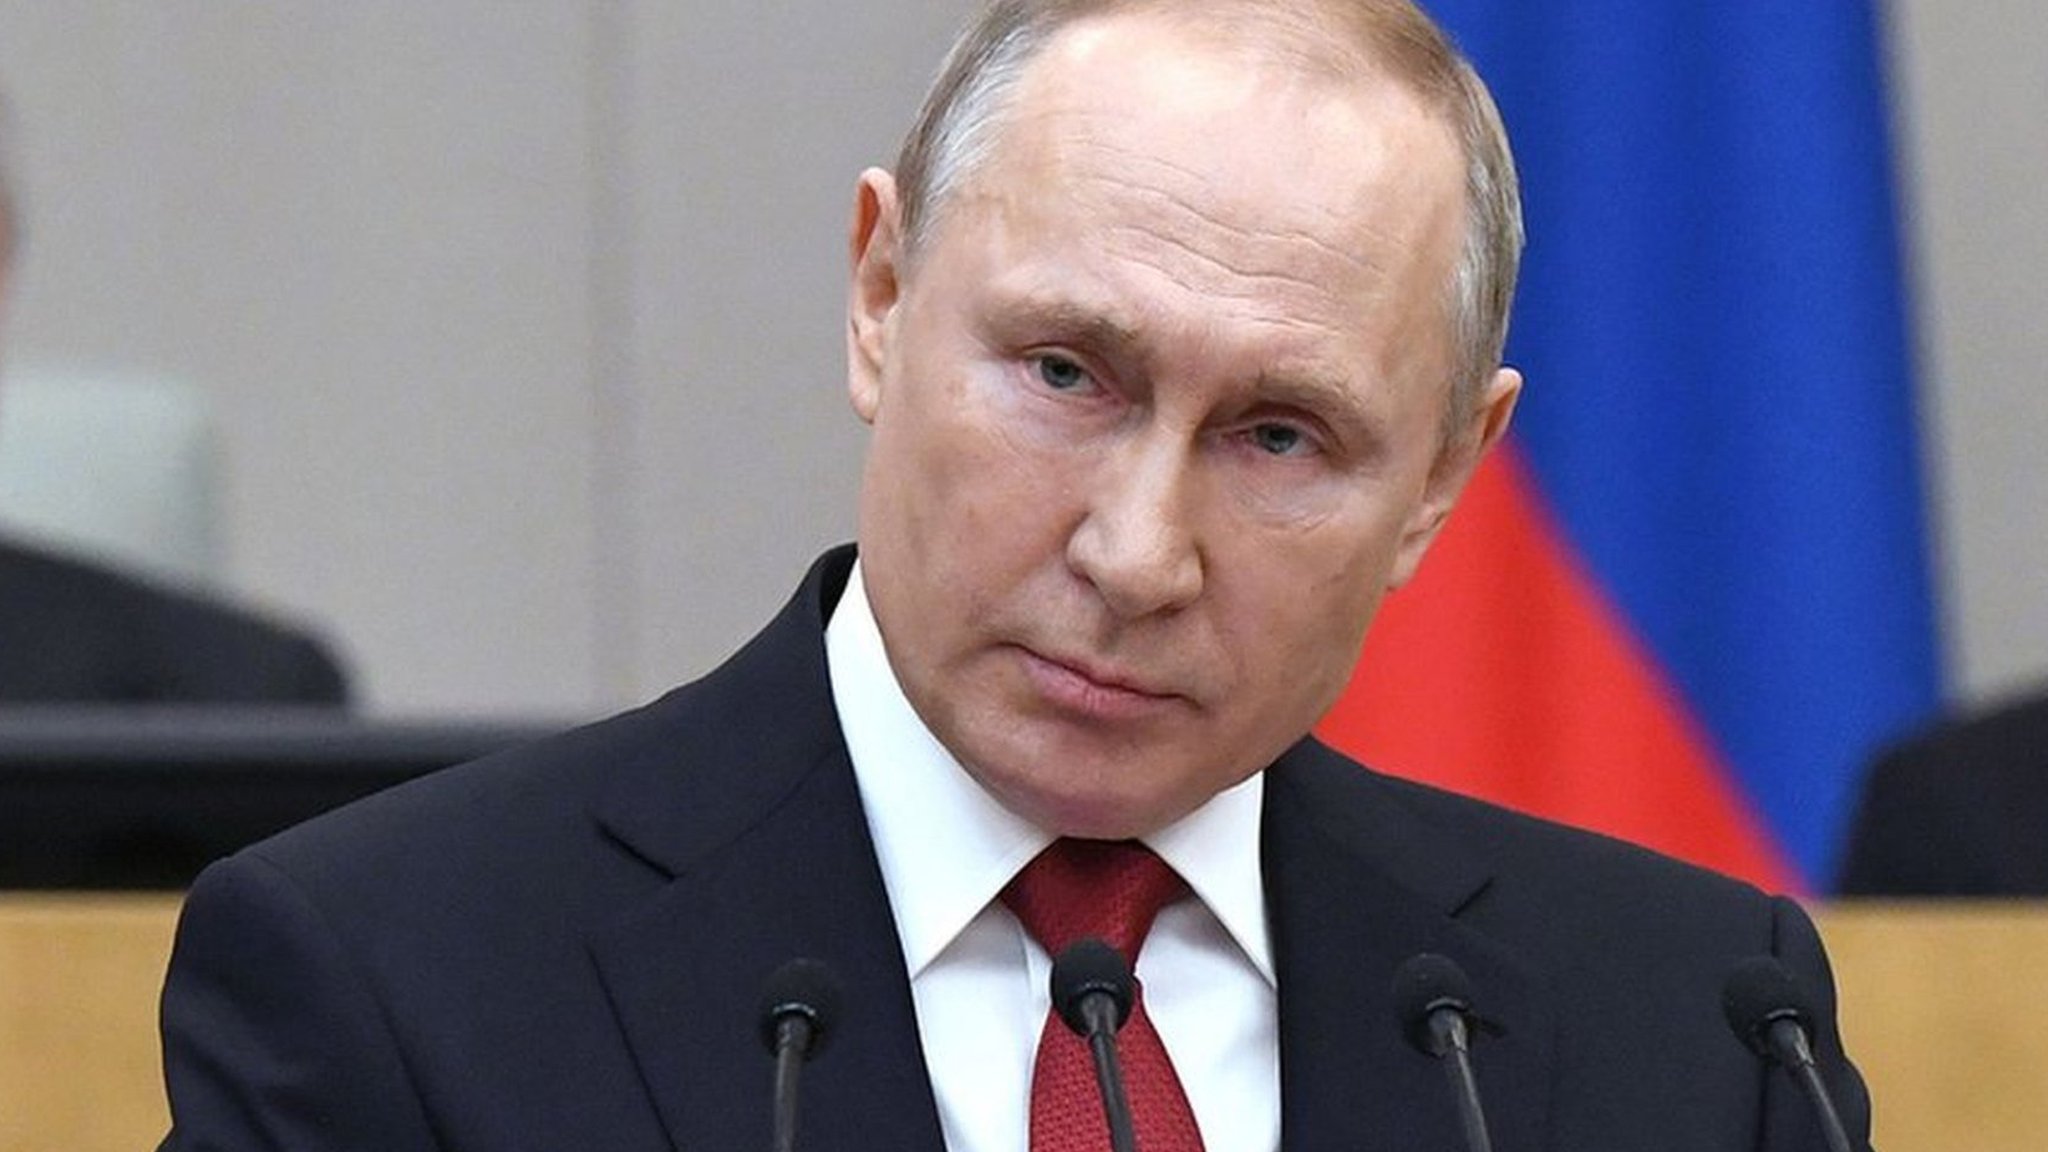 顔 た プーチン 変わっ プーチンは影武者かAI顔認証で判定